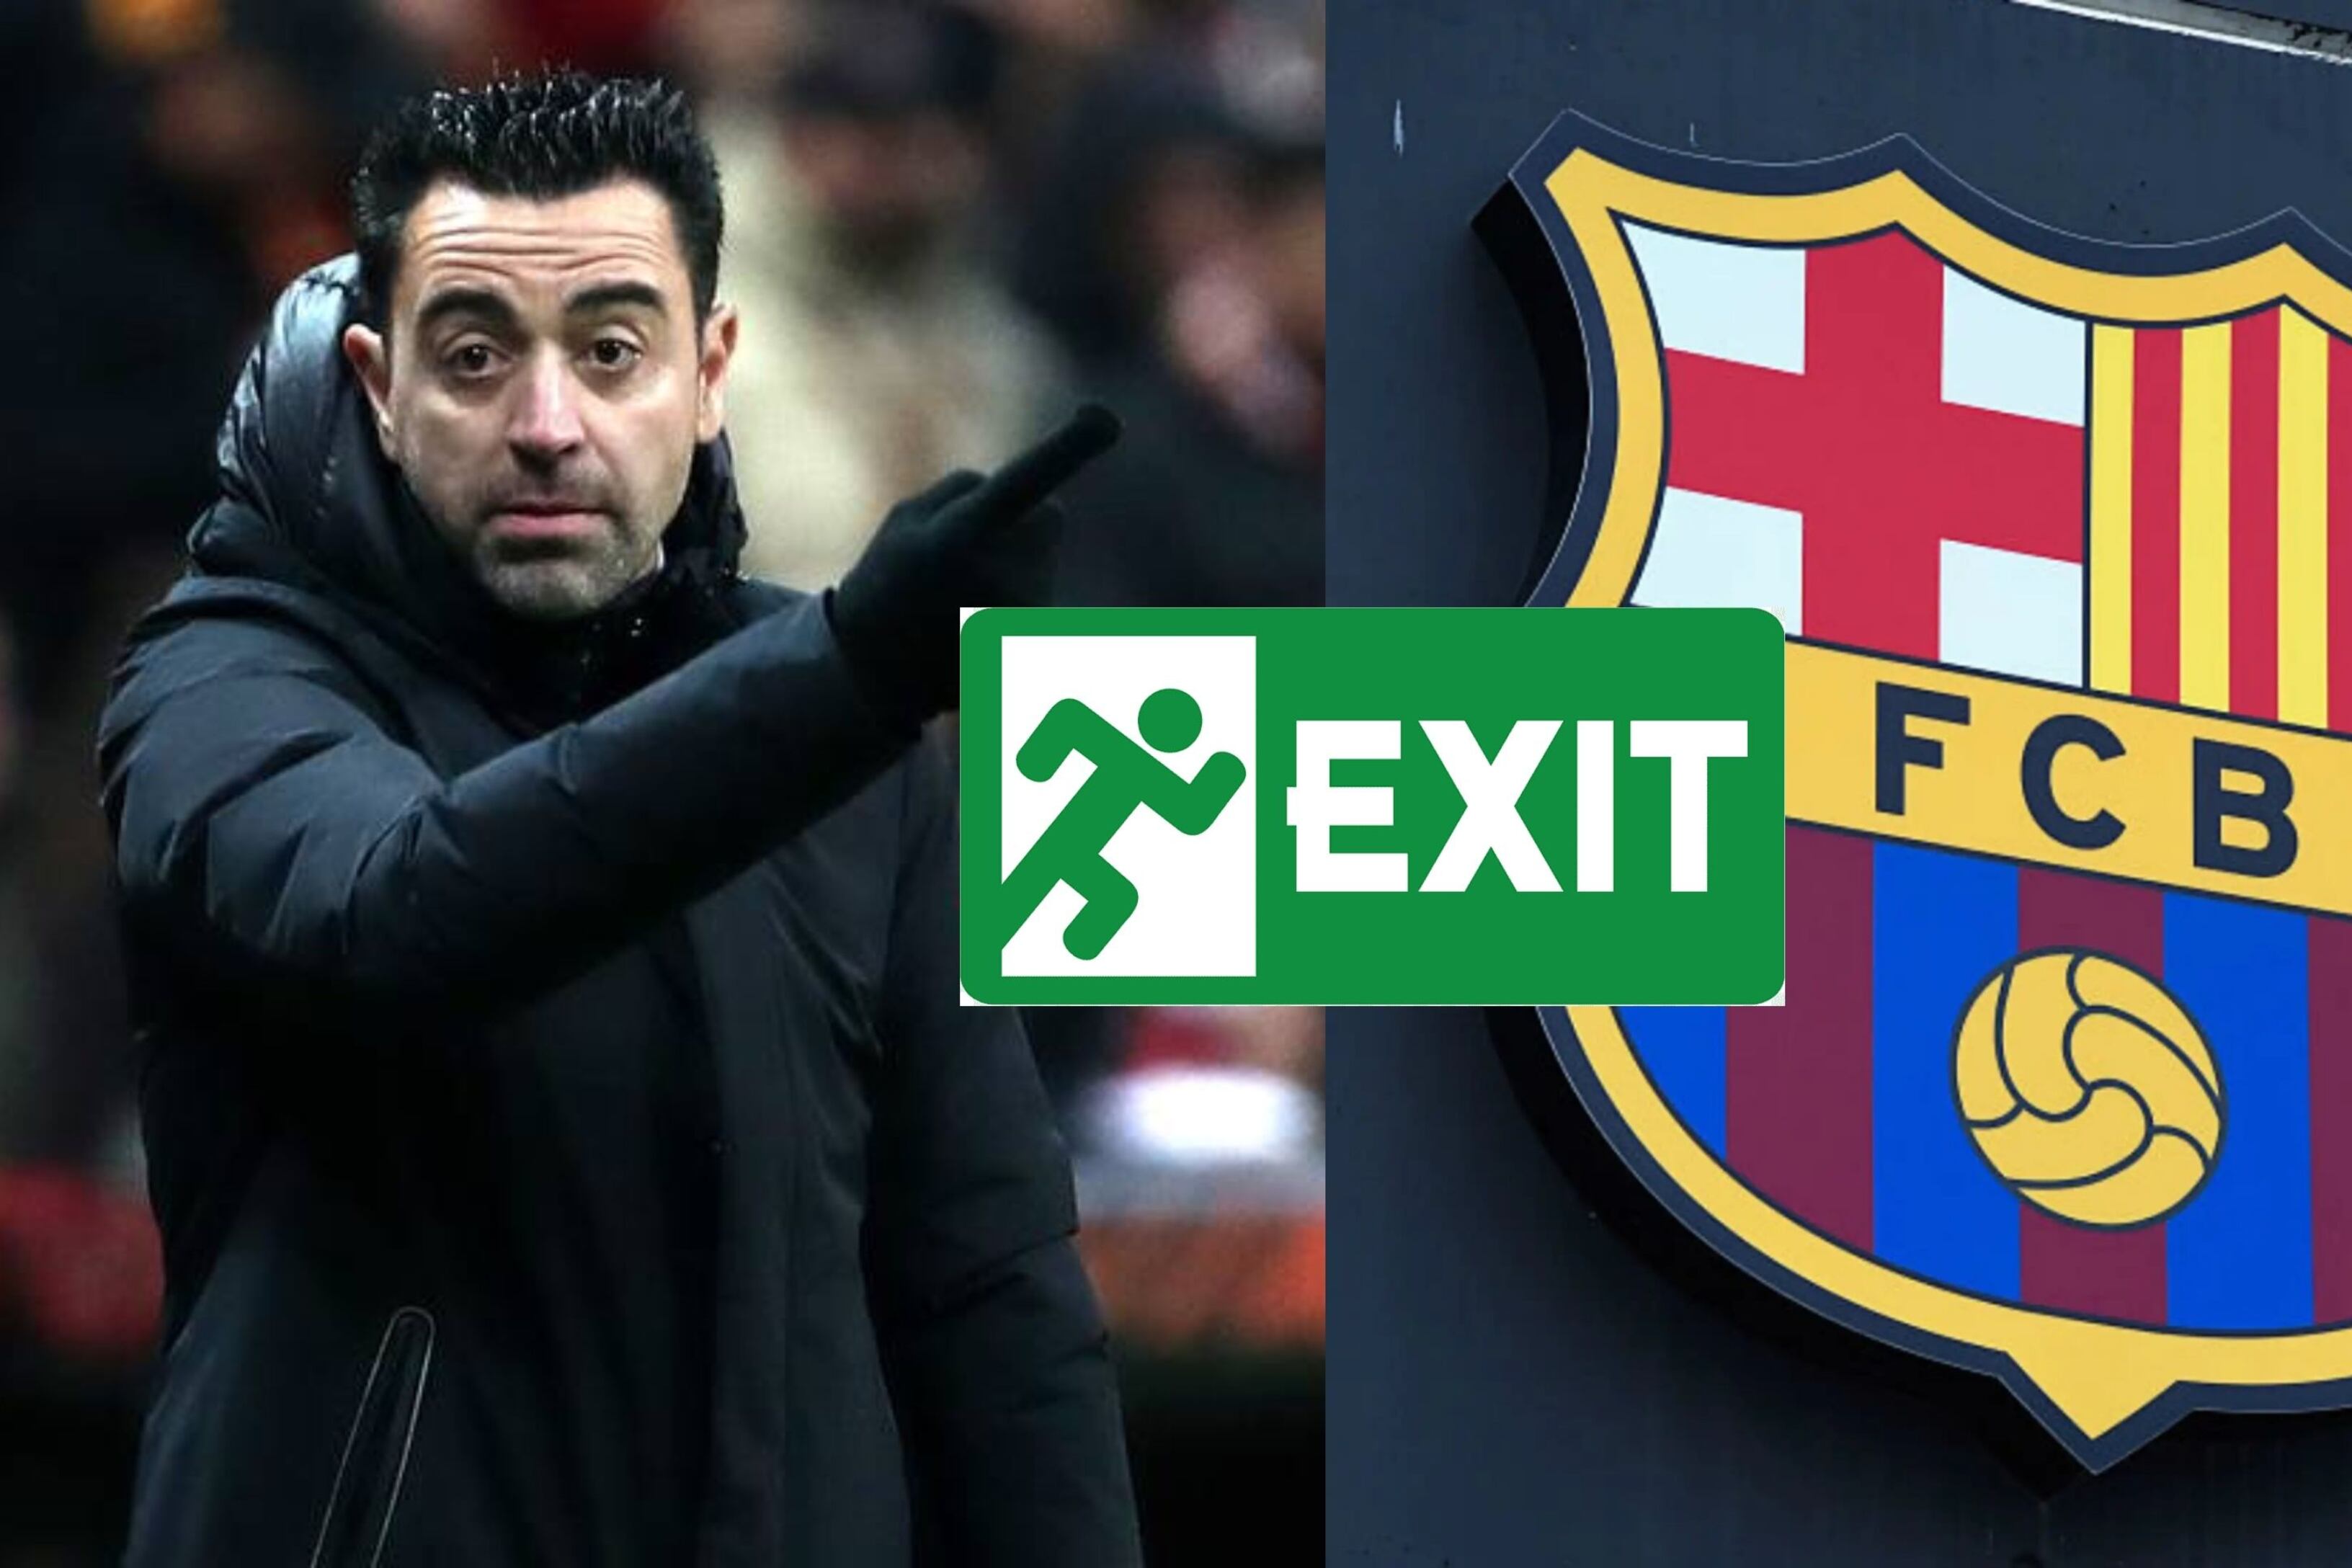 Faltan fichajes en el FC Barcelona, pero Xavi sigue borrando jugadores